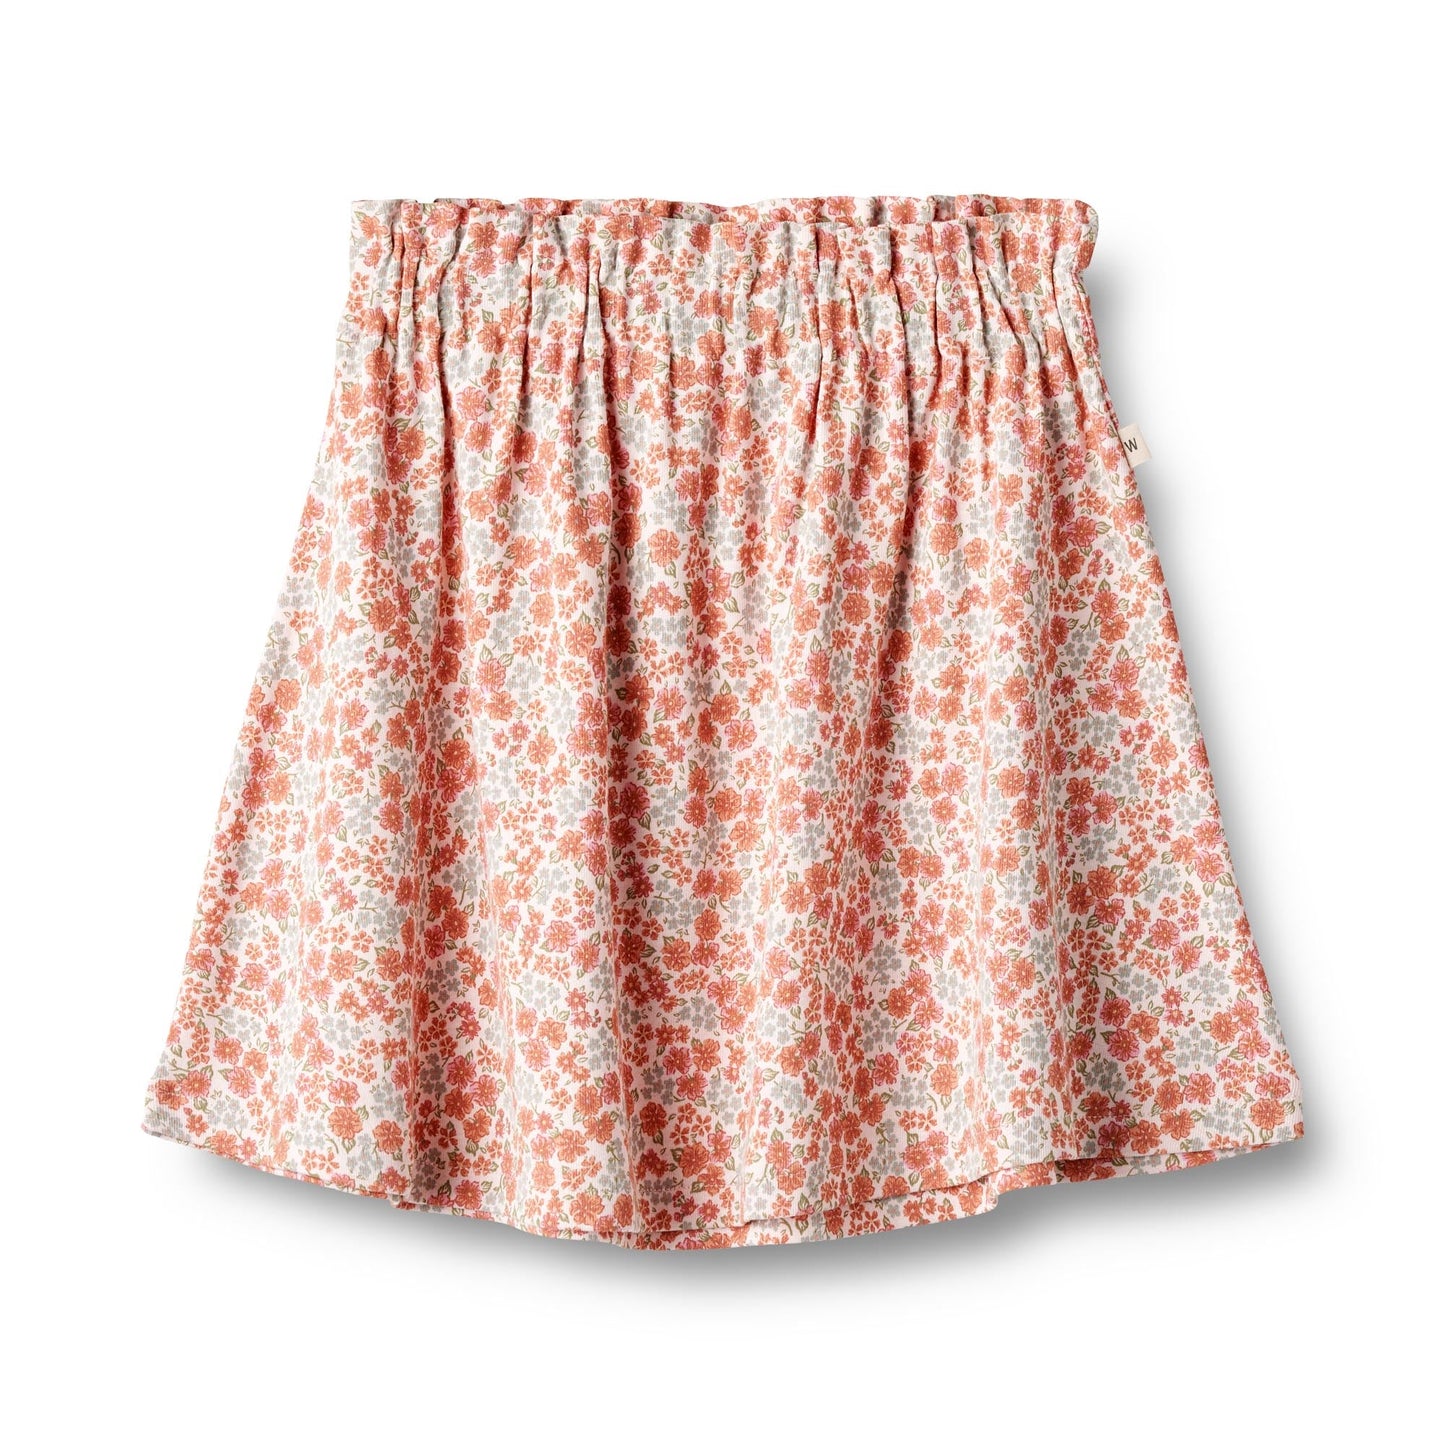 Wheat 'Agnetha' Children's Jersey Skirt - Rose Flowers